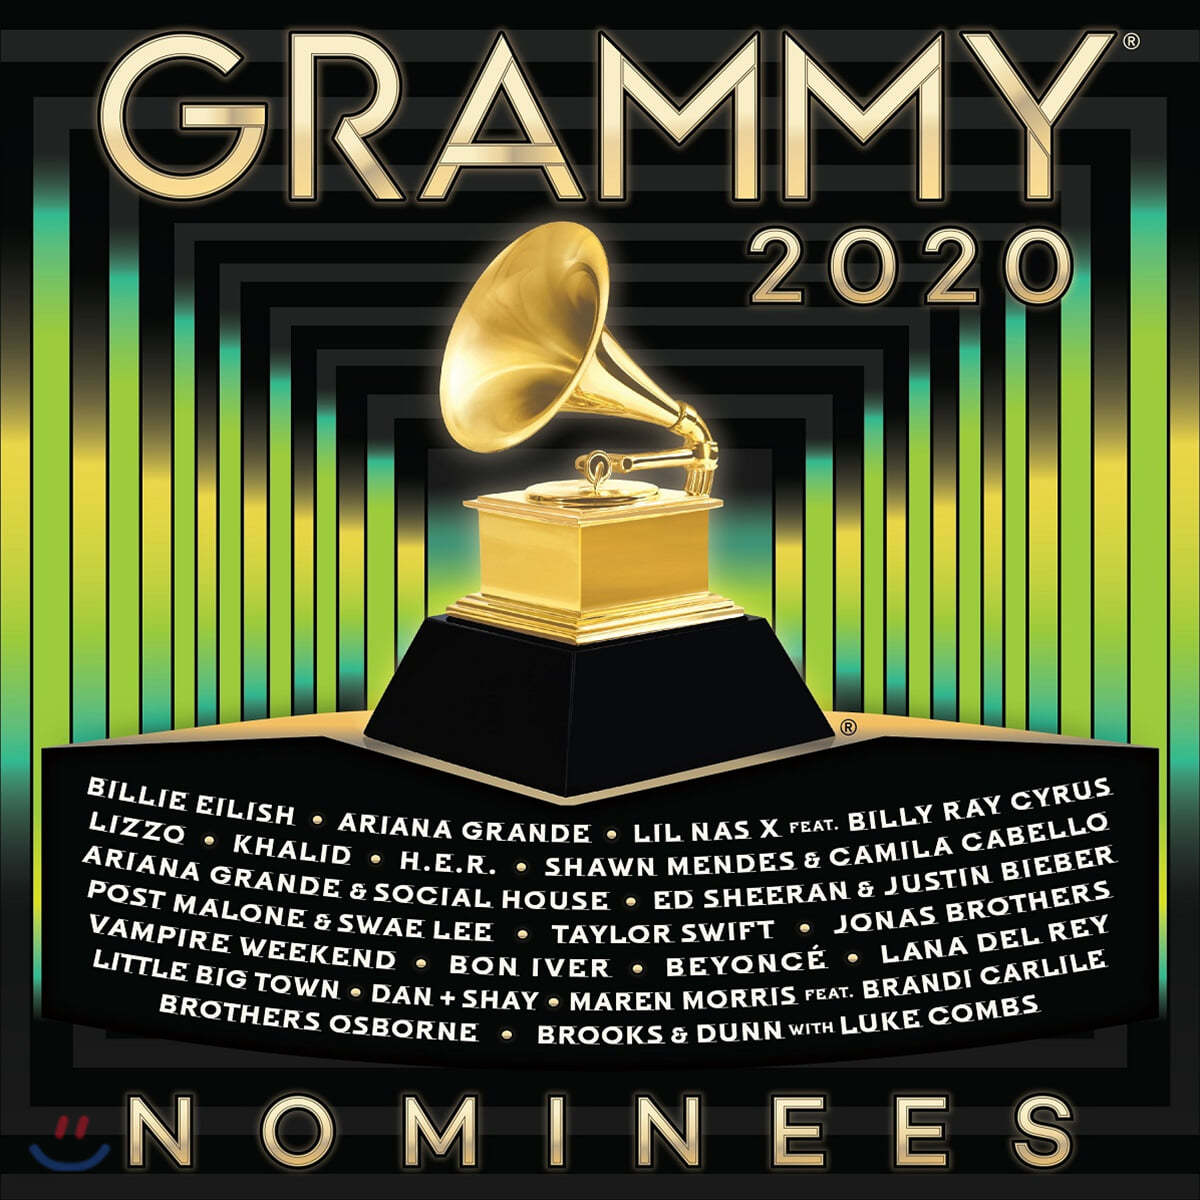 2020 그래미 노미니즈 - 후보작 모음집 (2020 Grammy Nominees)